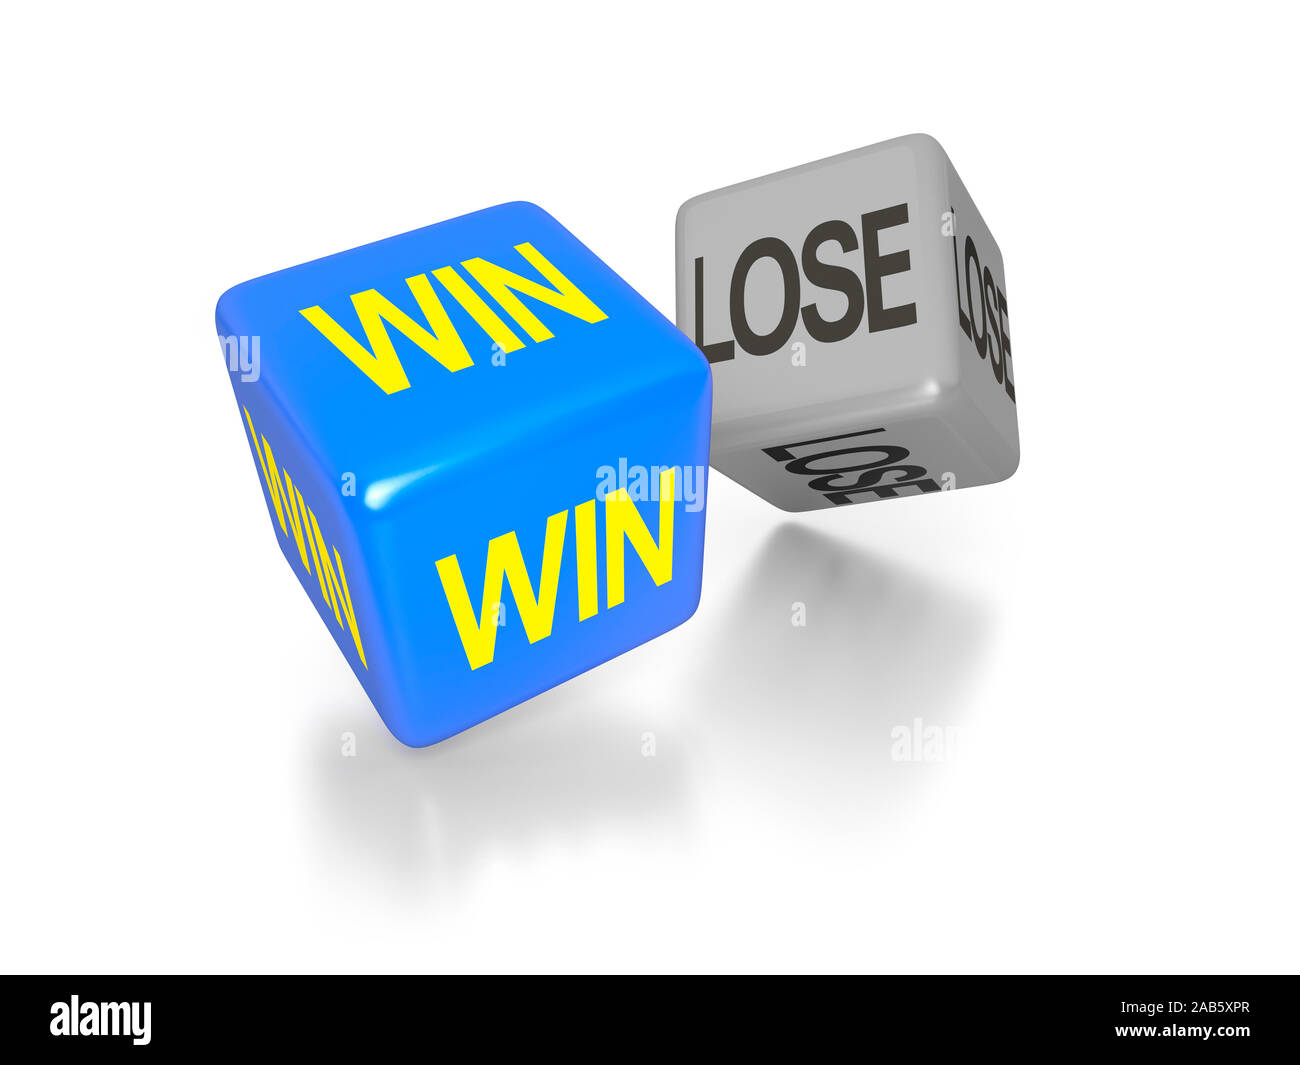 Zwei Wuerfel vor weissem Hintergrund, auf denen die Worte 'Win' und 'Lose' zu sehen sind. Stock Photo